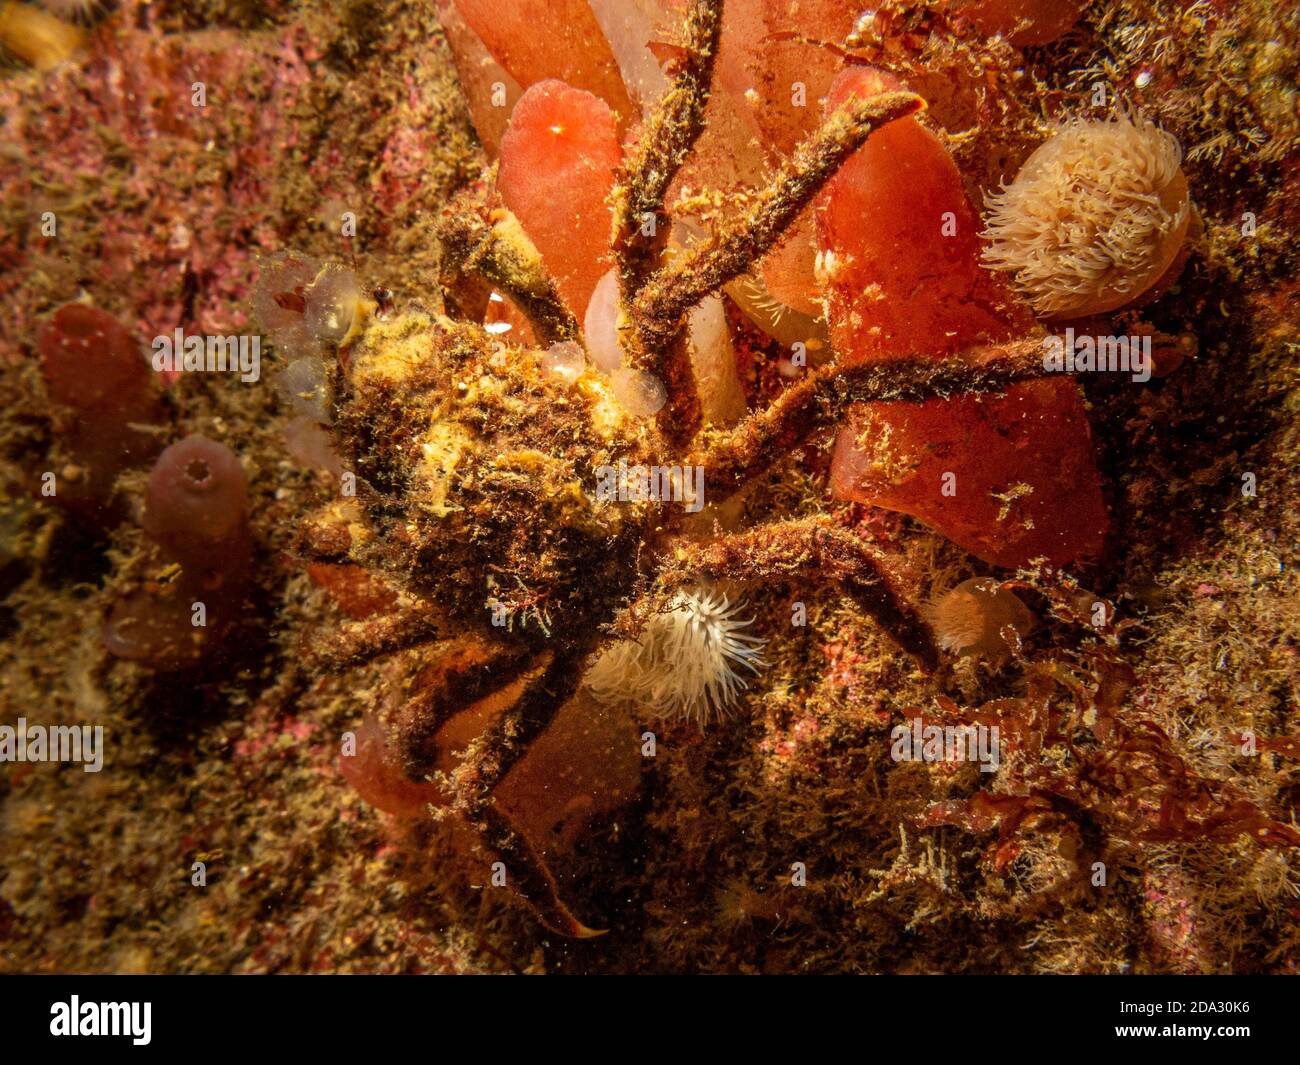 Un gros plan de l'Ascidiacea, communément connu sous le nom d'ascidiens ou de jets de mer et d'un crabe araignée. Photo des îles Weather, mer de Skagerack, ouest de la Suède Banque D'Images